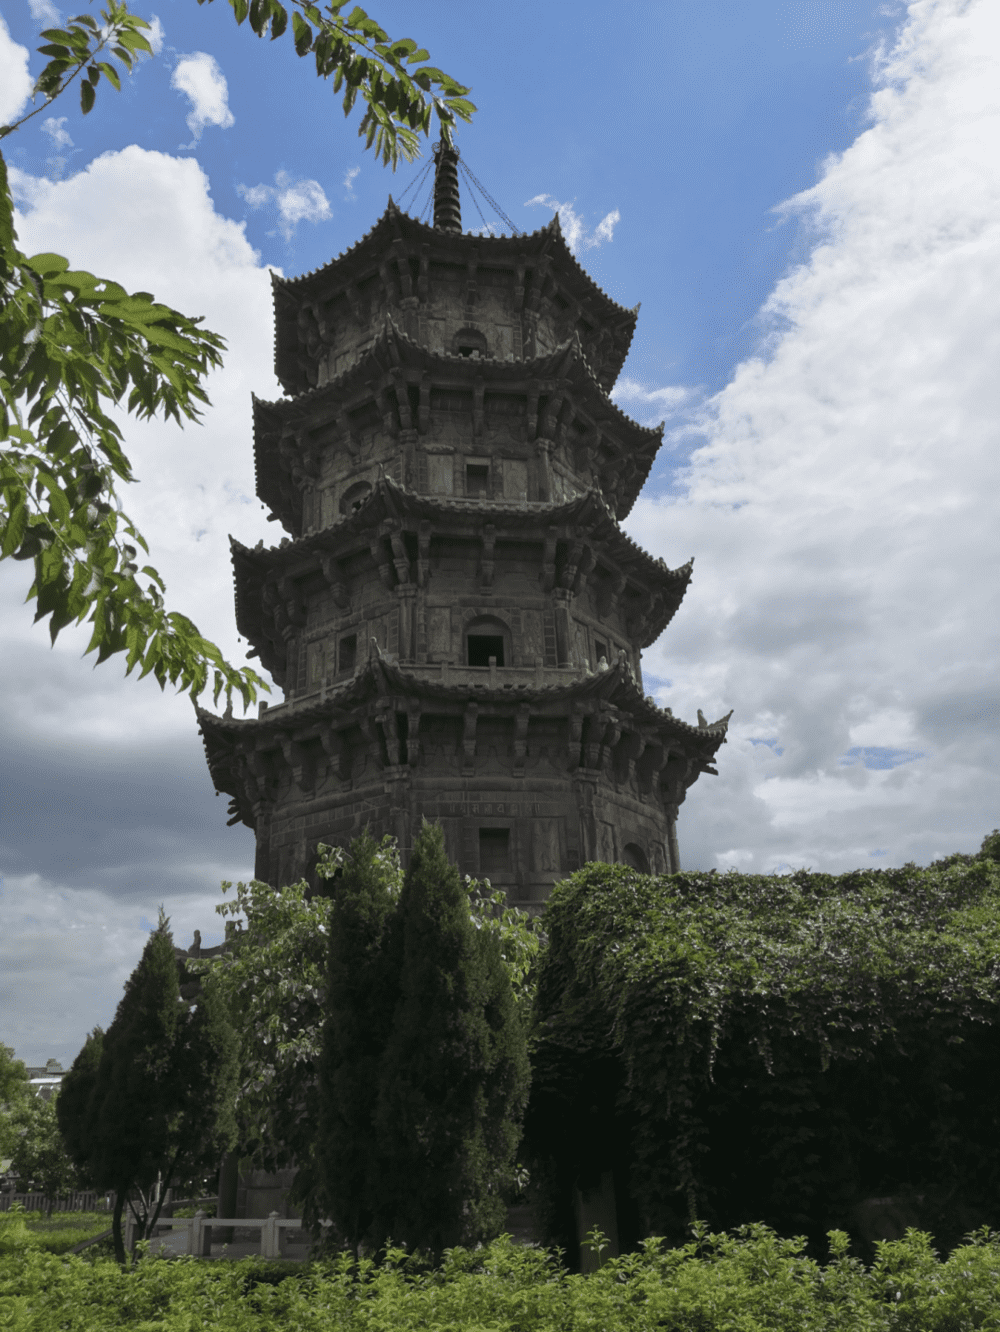 西塔名为仁寿塔，高约46米，形制与东塔类似，壁上所塑与东塔有所不同，更多为僧侣罗汉，武将装扮者较少。<br>